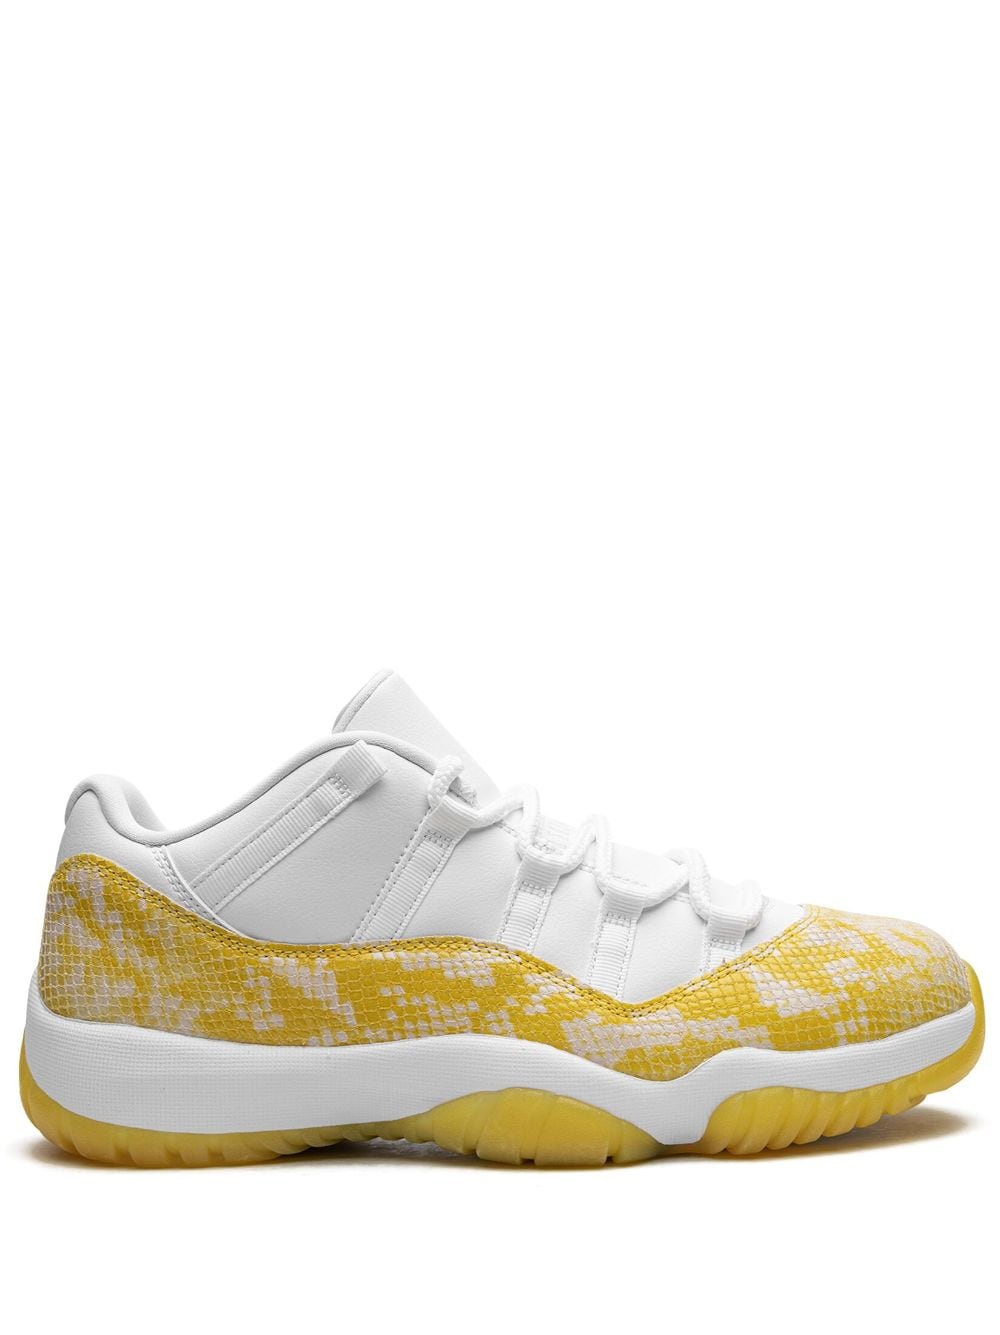 Jordan Air  11 Retro Low Sneaker In White  Tour Yellow  & White